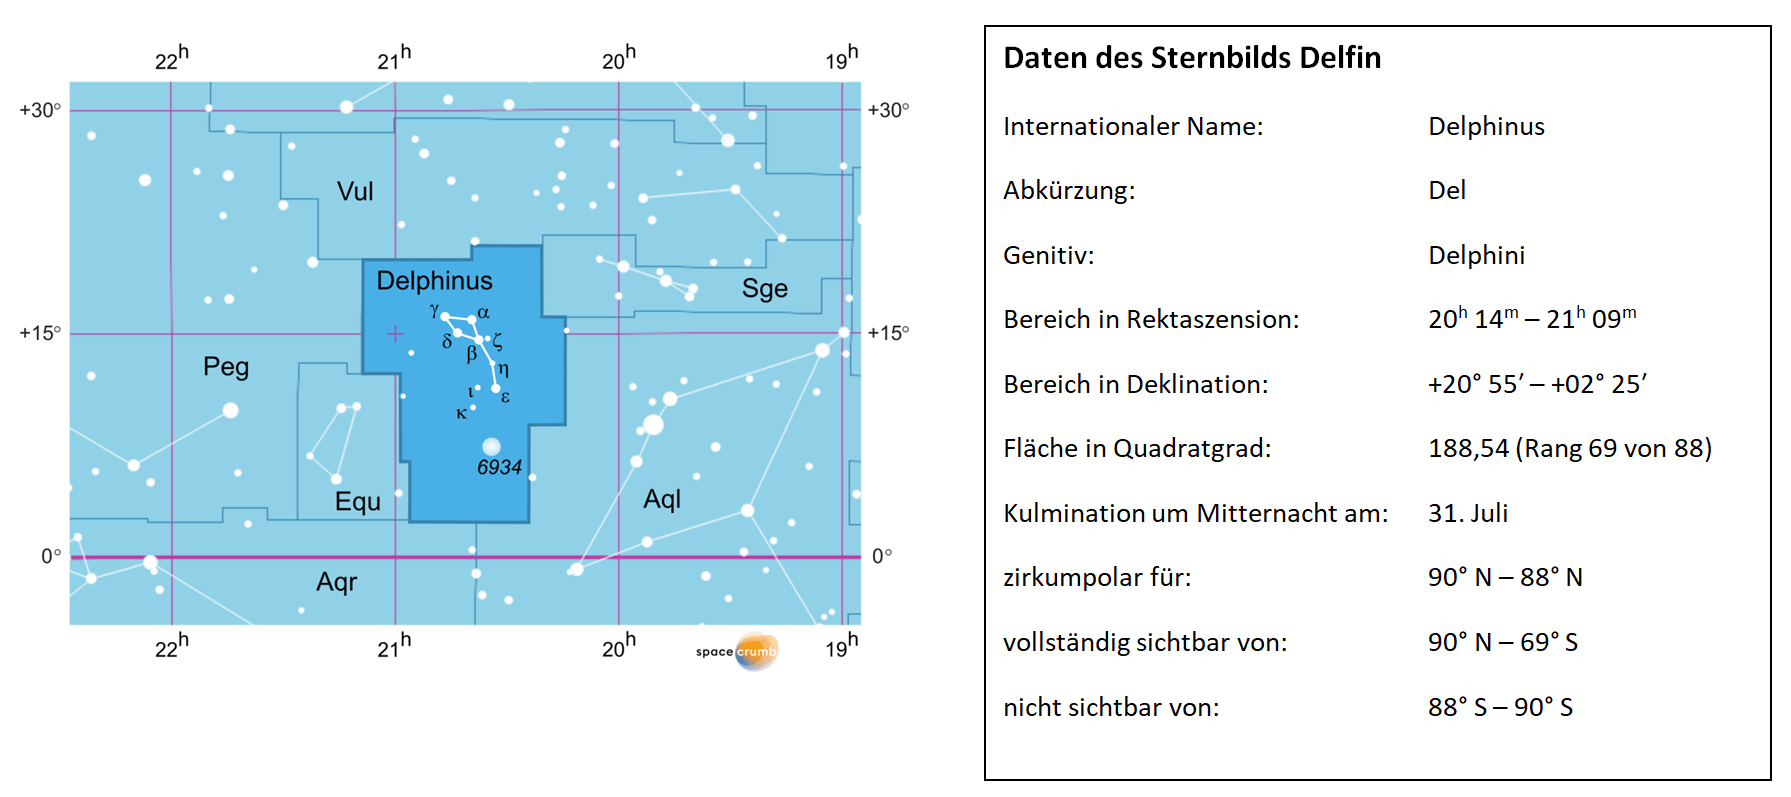 Links zeigt eine mit Koordinaten versehene Karte eines Himmelsausschnitts weiße Sterne auf hellblauem Hintergrund. Die Fläche, die das Sternbild Delfin einnimmt, ist dunkelblau hervorgehoben. Eine Tabelle rechts gibt wichtige Daten des Sternbilds an.